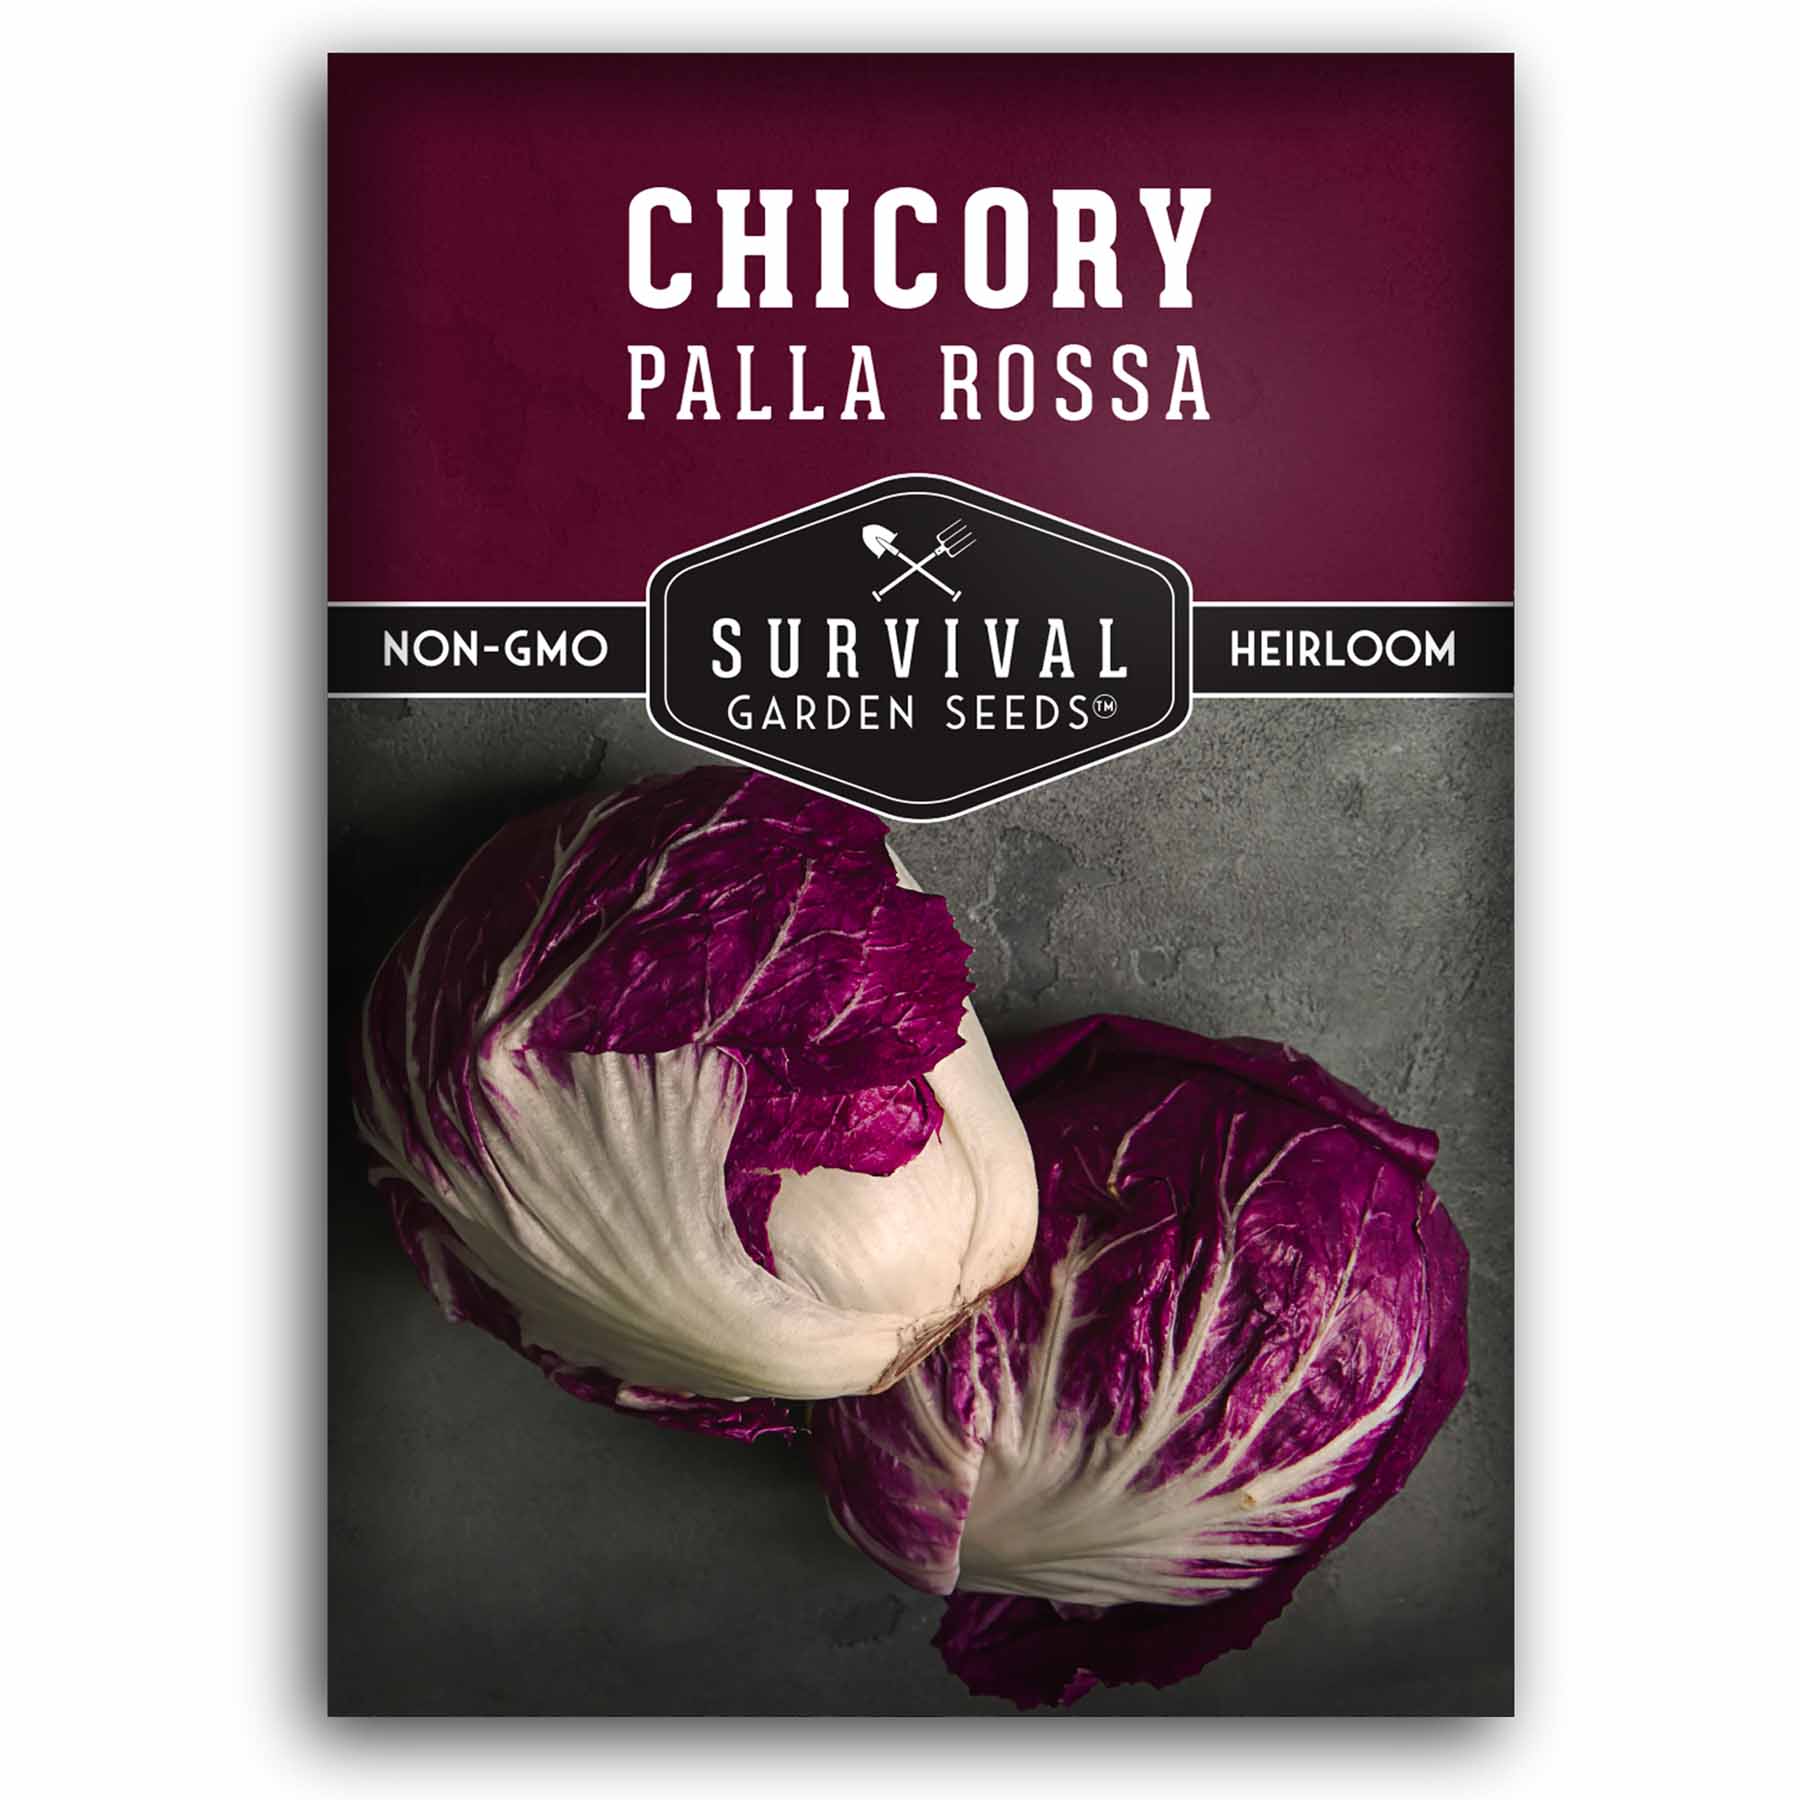 Palla Rossa Chickory seeds